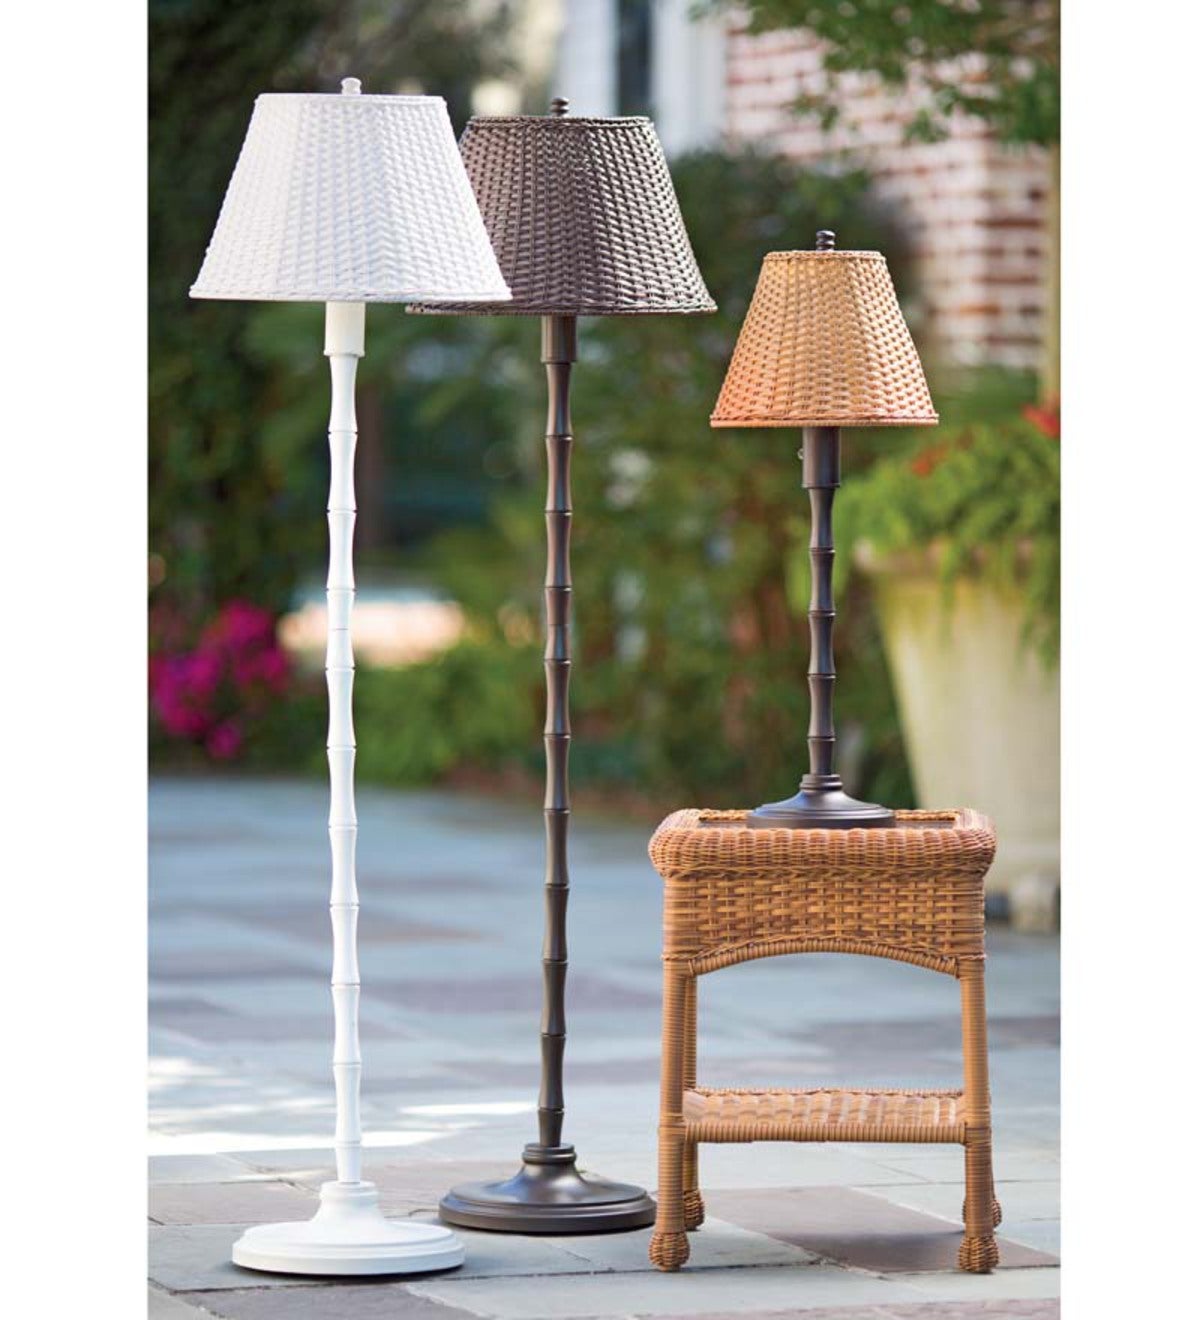 All-Weather Outdoor Rattan Wicker Floor Lamp - Brown | Plow & Hearth